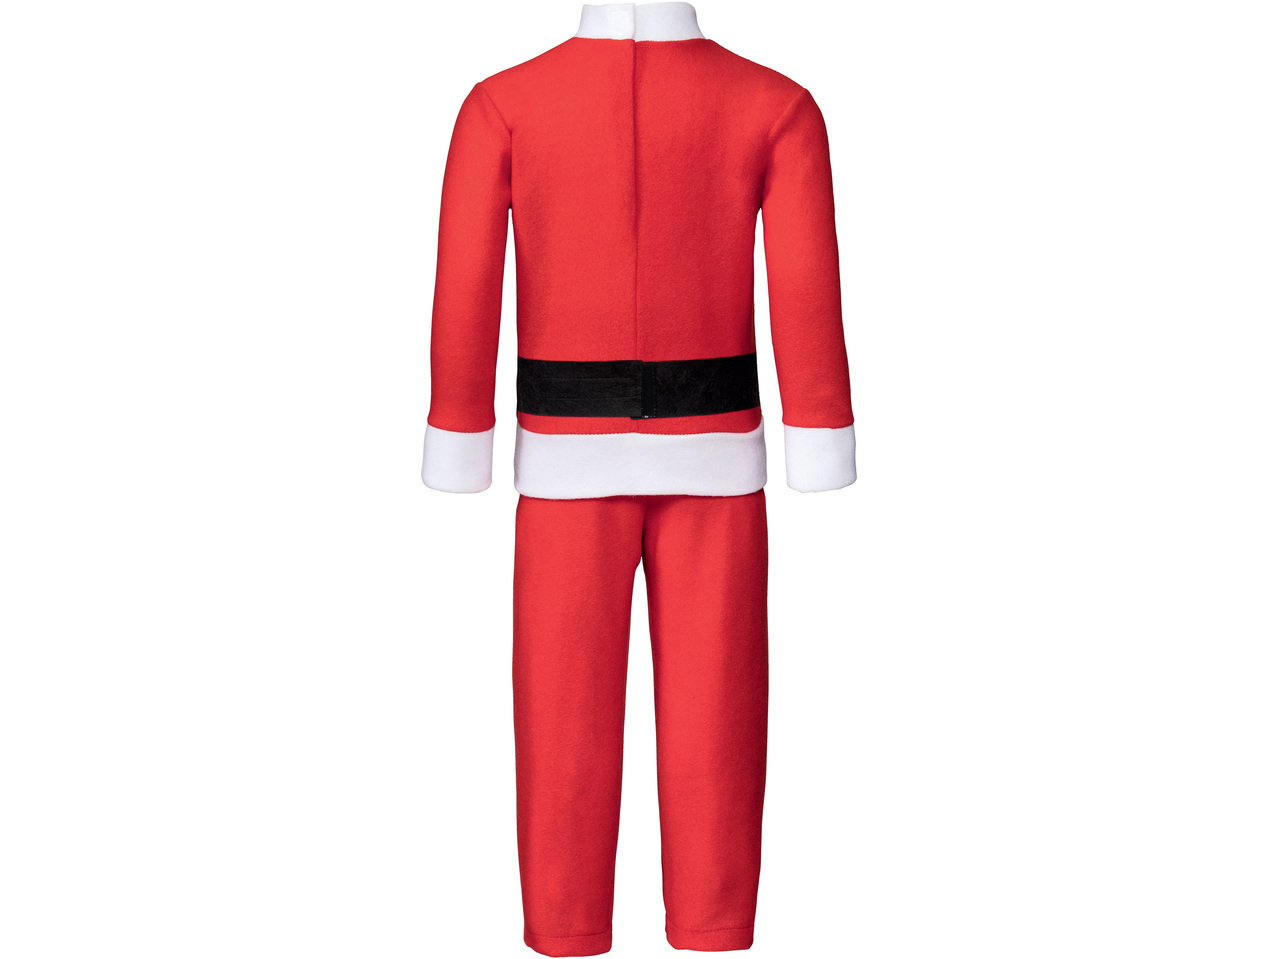 Santa Claus/Elf Costume